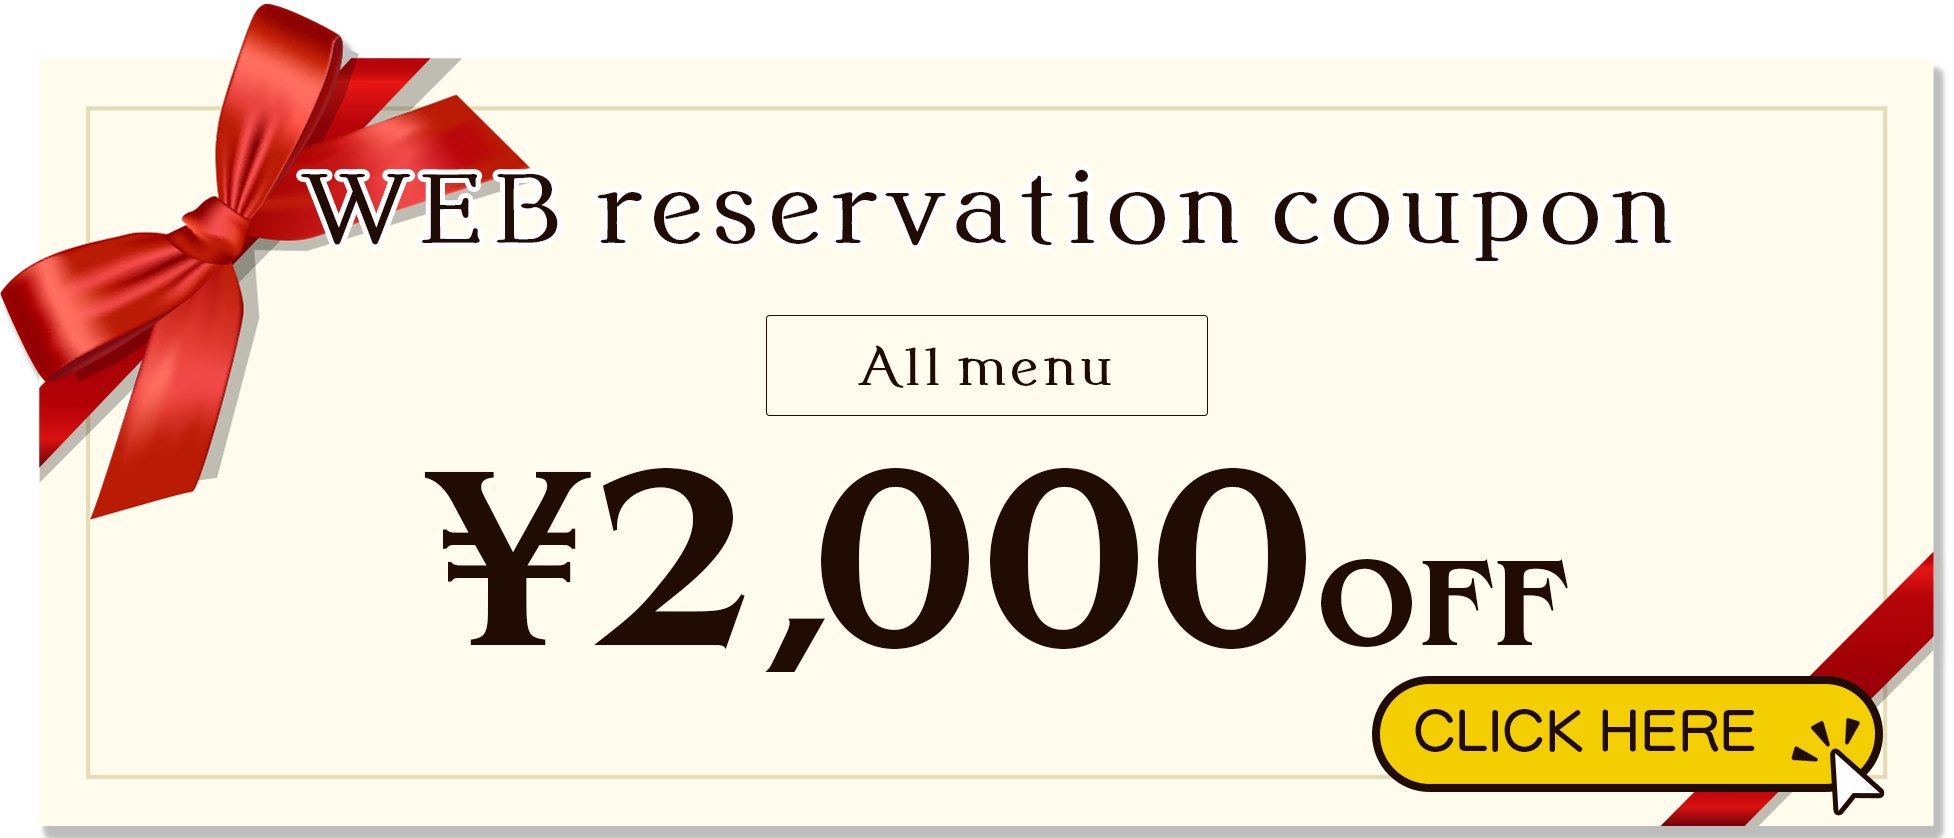 All menus 2000 yen OFF